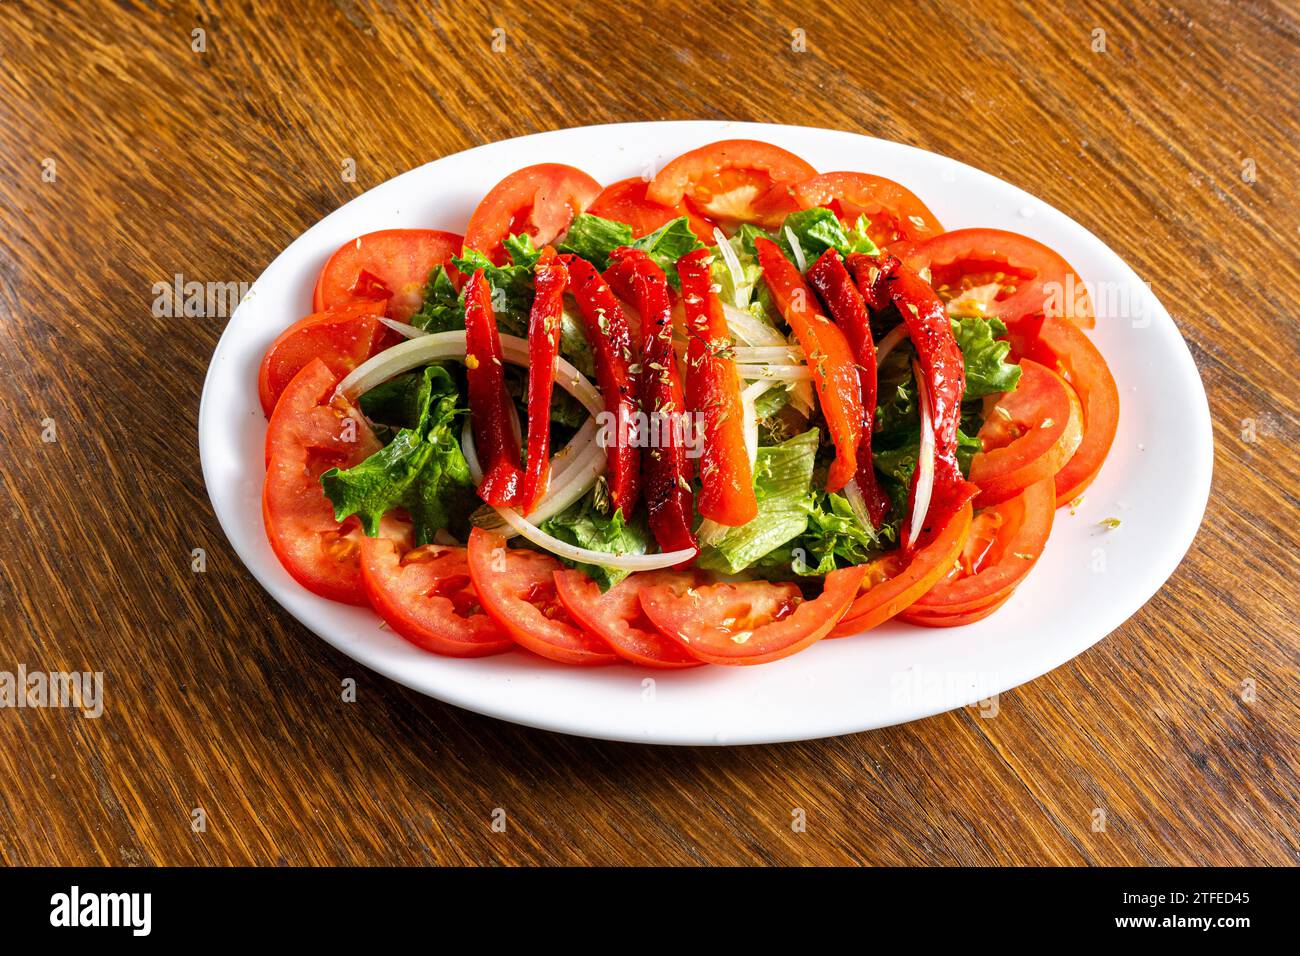 Salade fraîche avec laitue, tomates, oignons et poivrons rouges rôtis. Couleurs vives et ingrédients sains. Banque D'Images